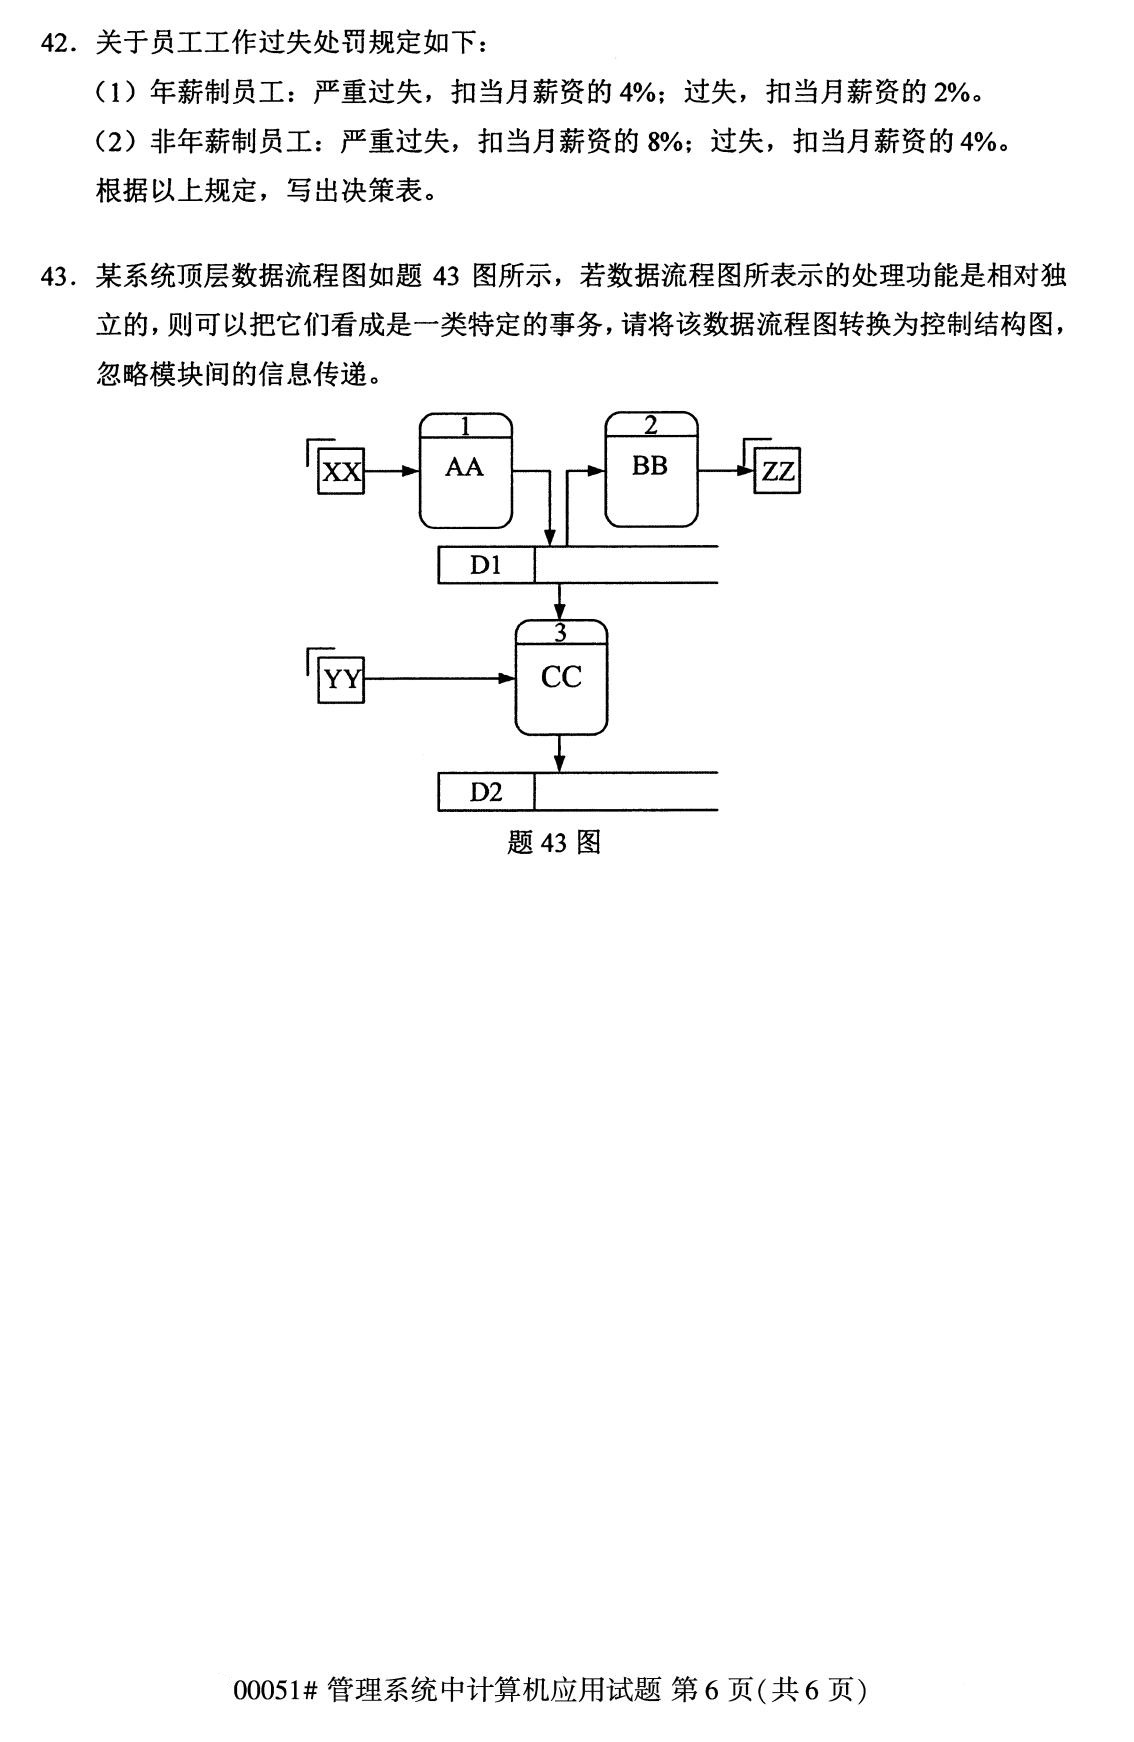 2020年8月四川省自学考试本科管理系统中计算机应用真题(图6)